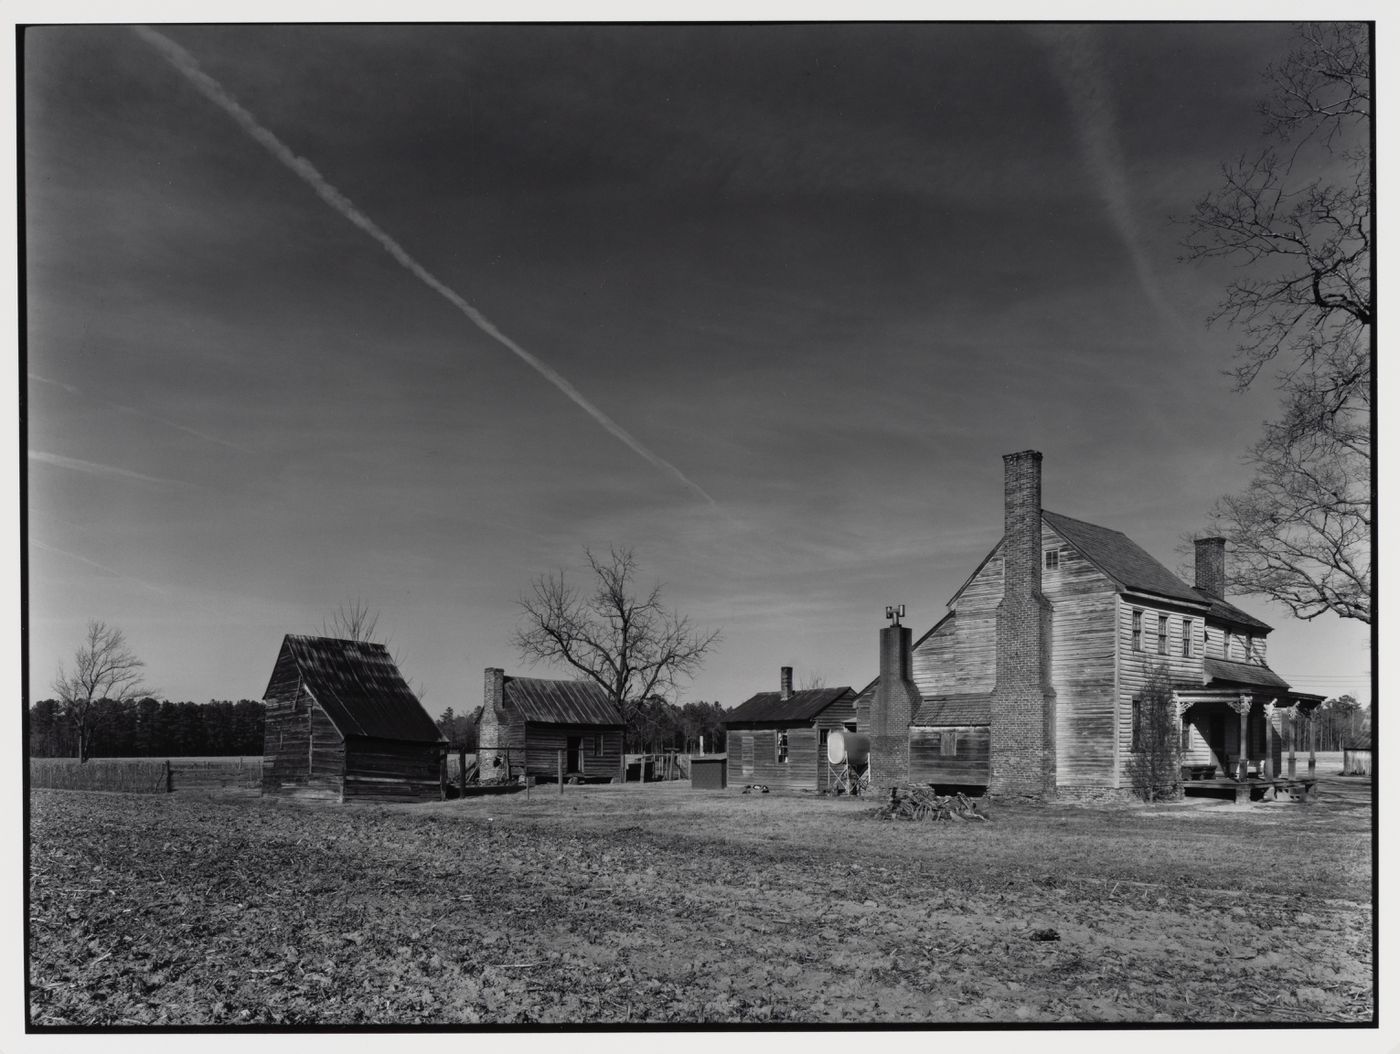 The Sykes Farm, ca. 1825, Southampton County, Virginia